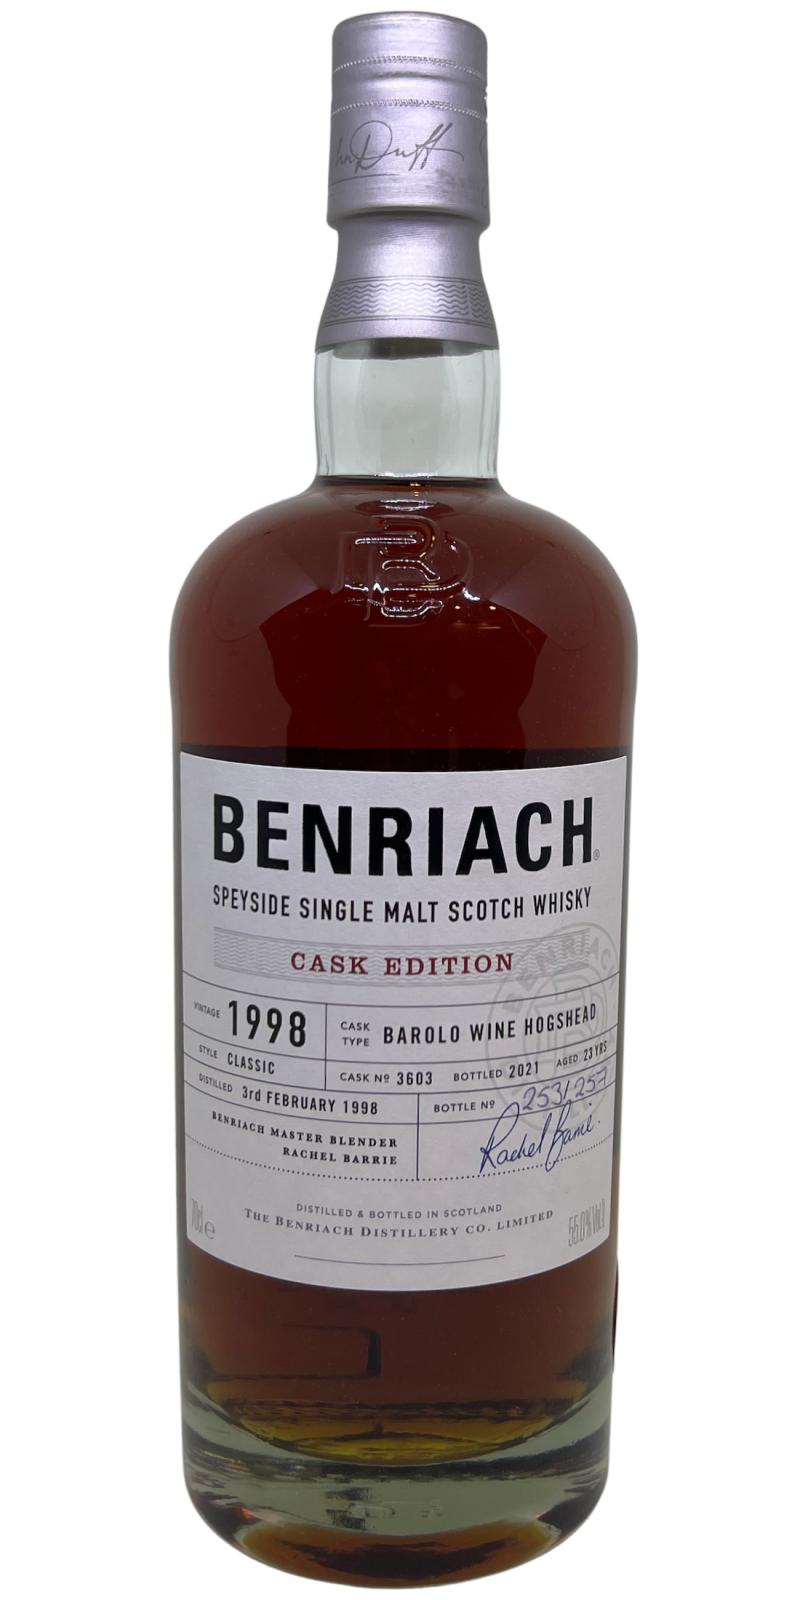 BenRiach 1998 Cask Edition Barolo Wine Hogshead 55% 700ml